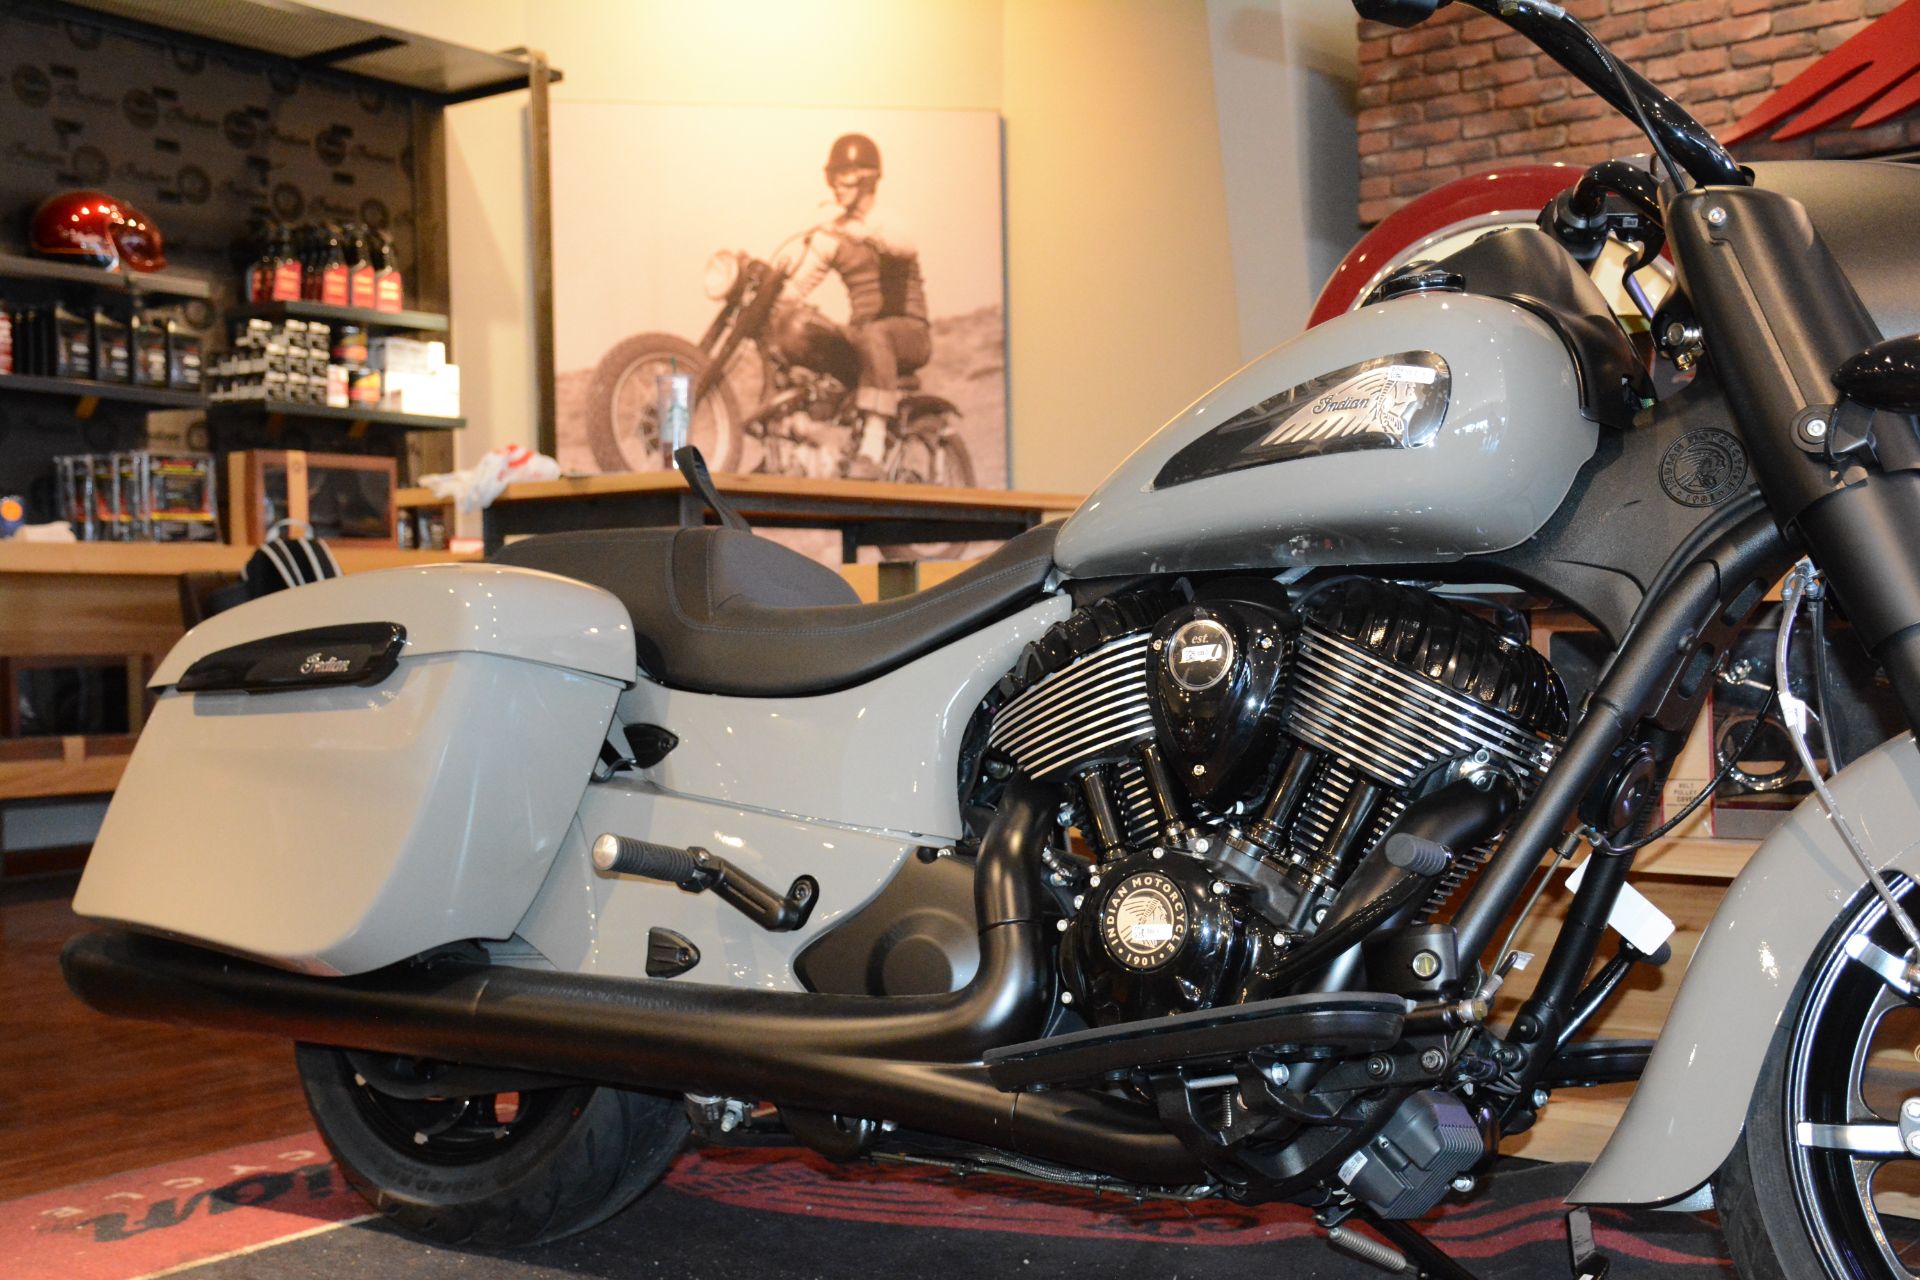 2023 Indian Motorcycle Springfield® in El Paso, Texas - Photo 3